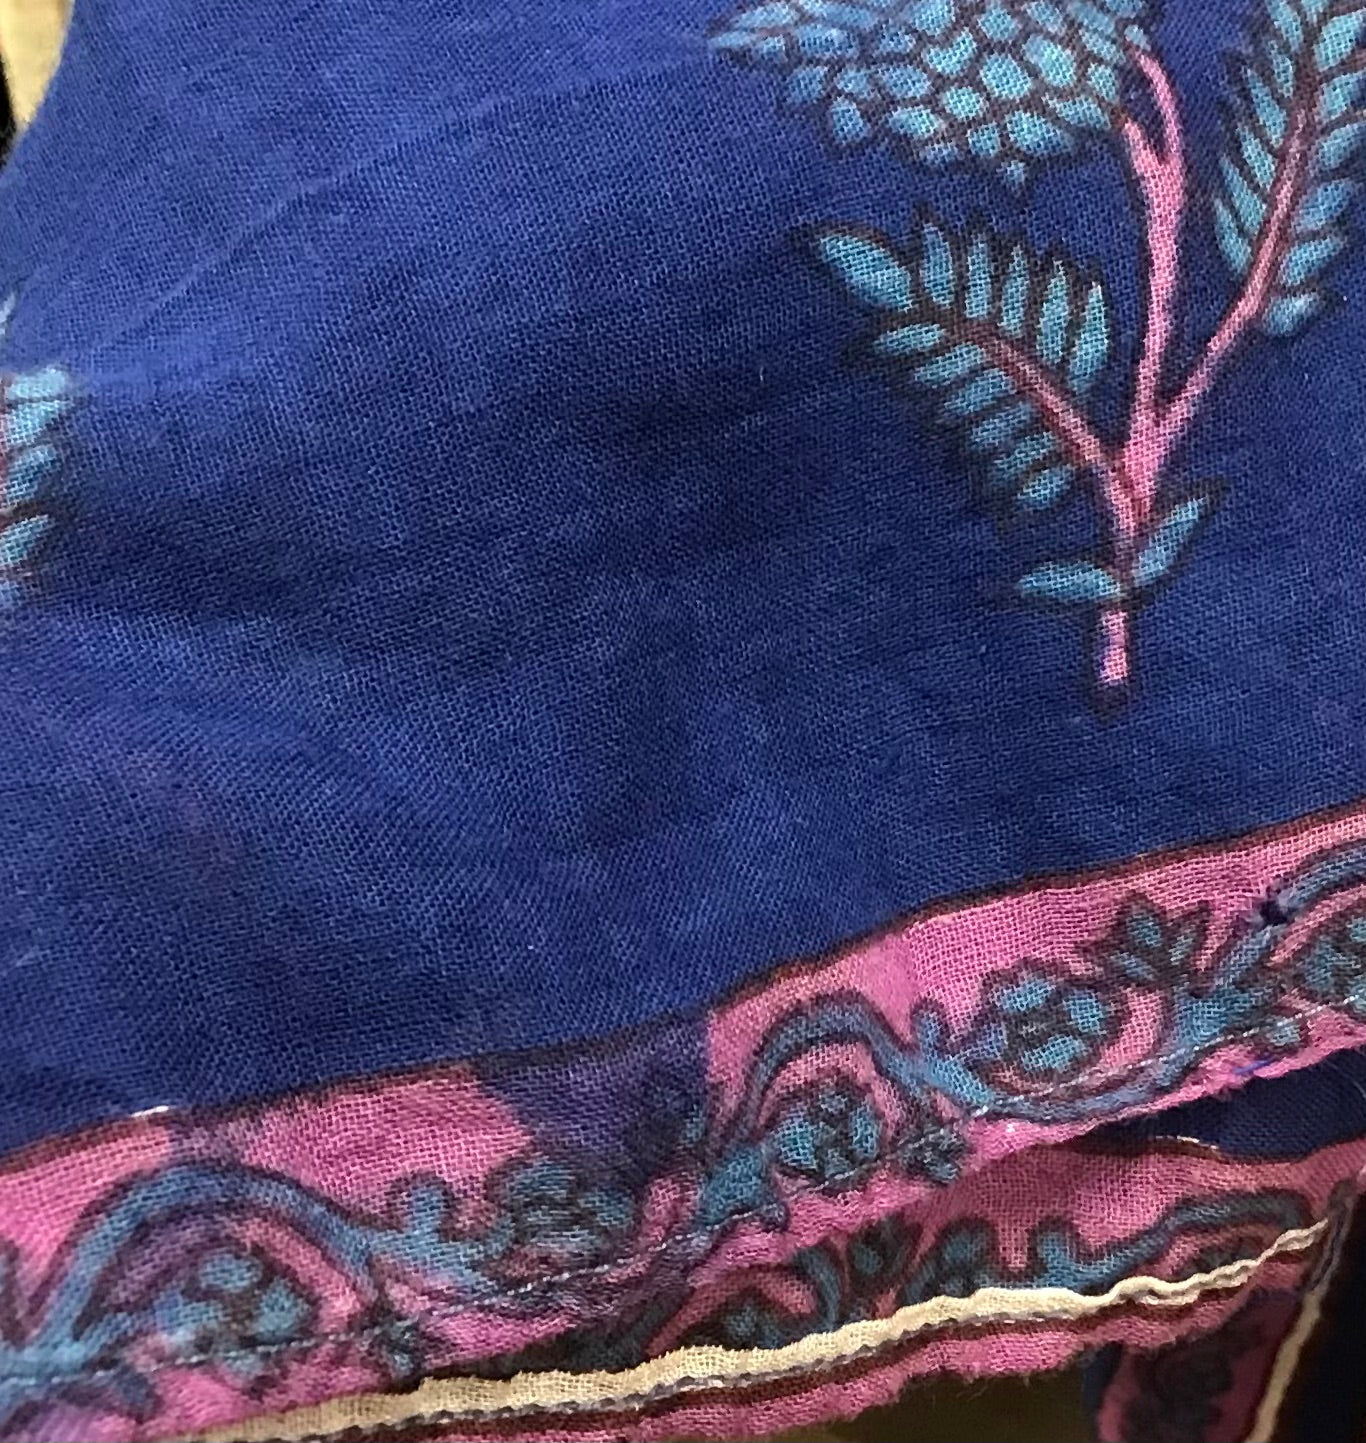 Vintage Indian Cotton Dress [H24766]